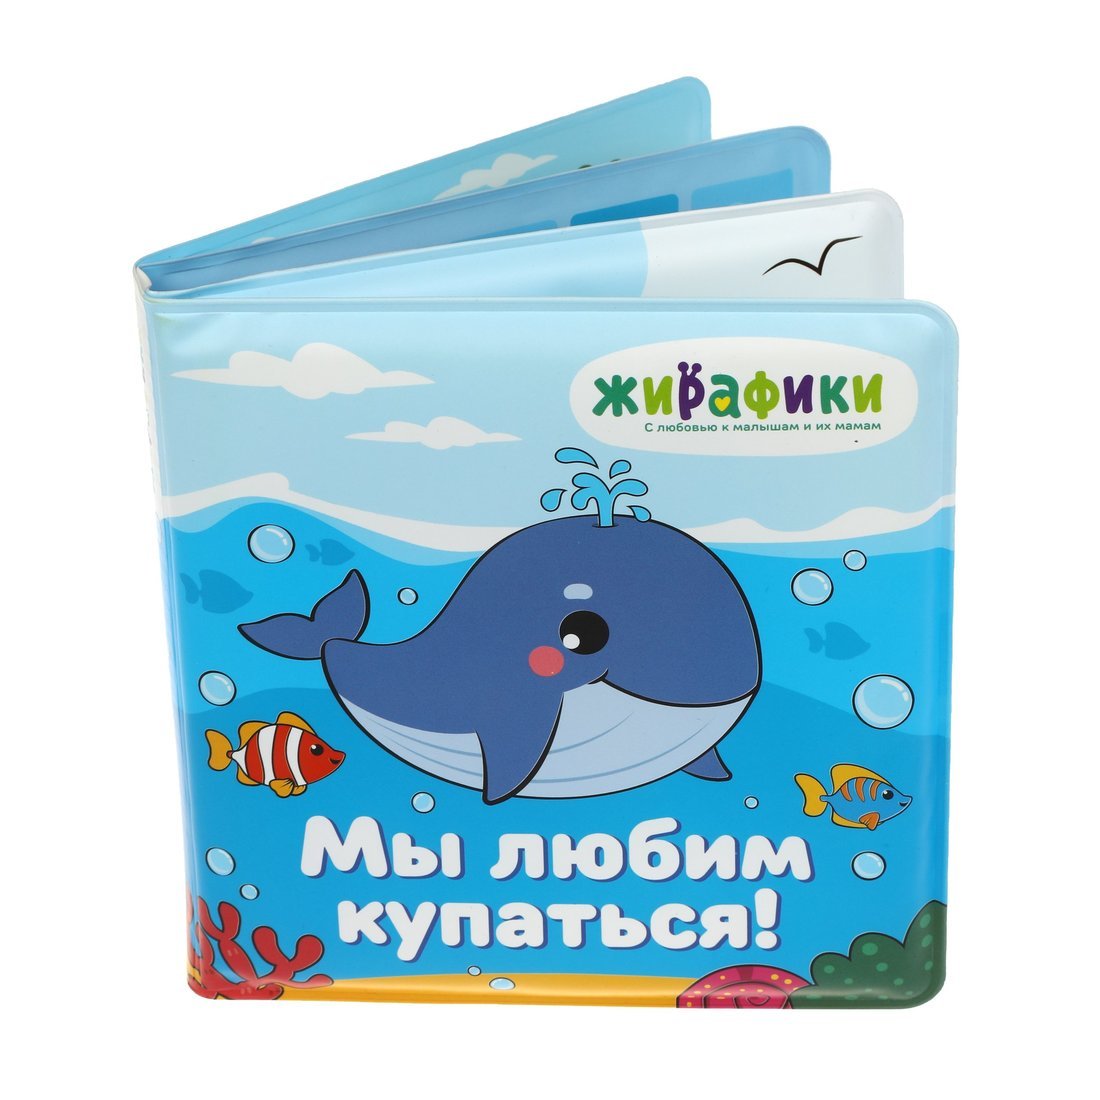 Книжка для купания 939830 Мы любим купаться 14*14см ПВХ со стишками ТМ Жирафики - Саранск 